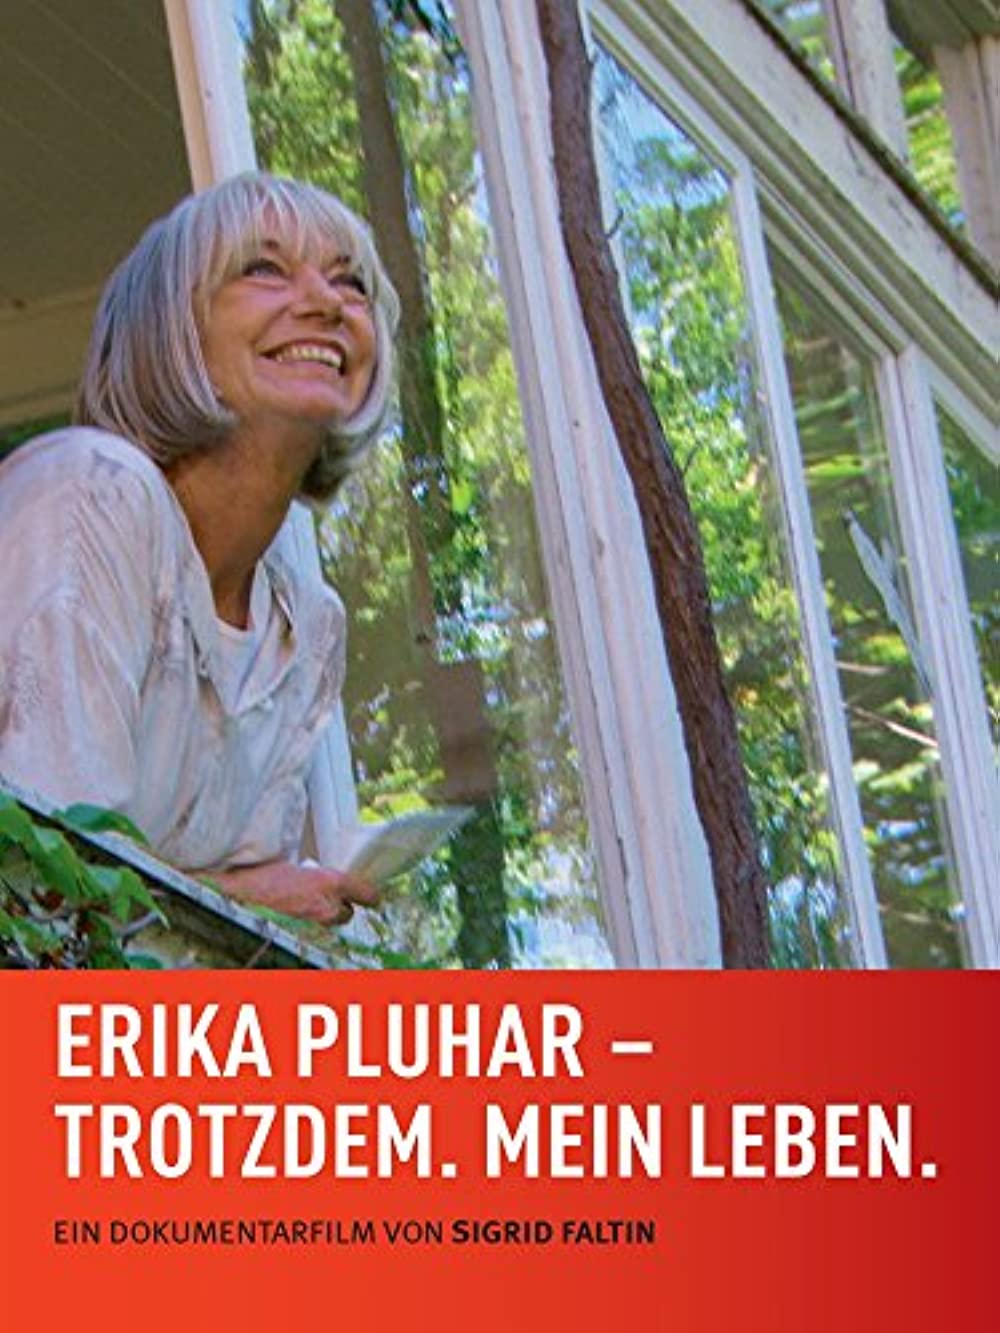 Filmbeschreibung zu Erika Pluhar - Trotzdem. Mein Leben.